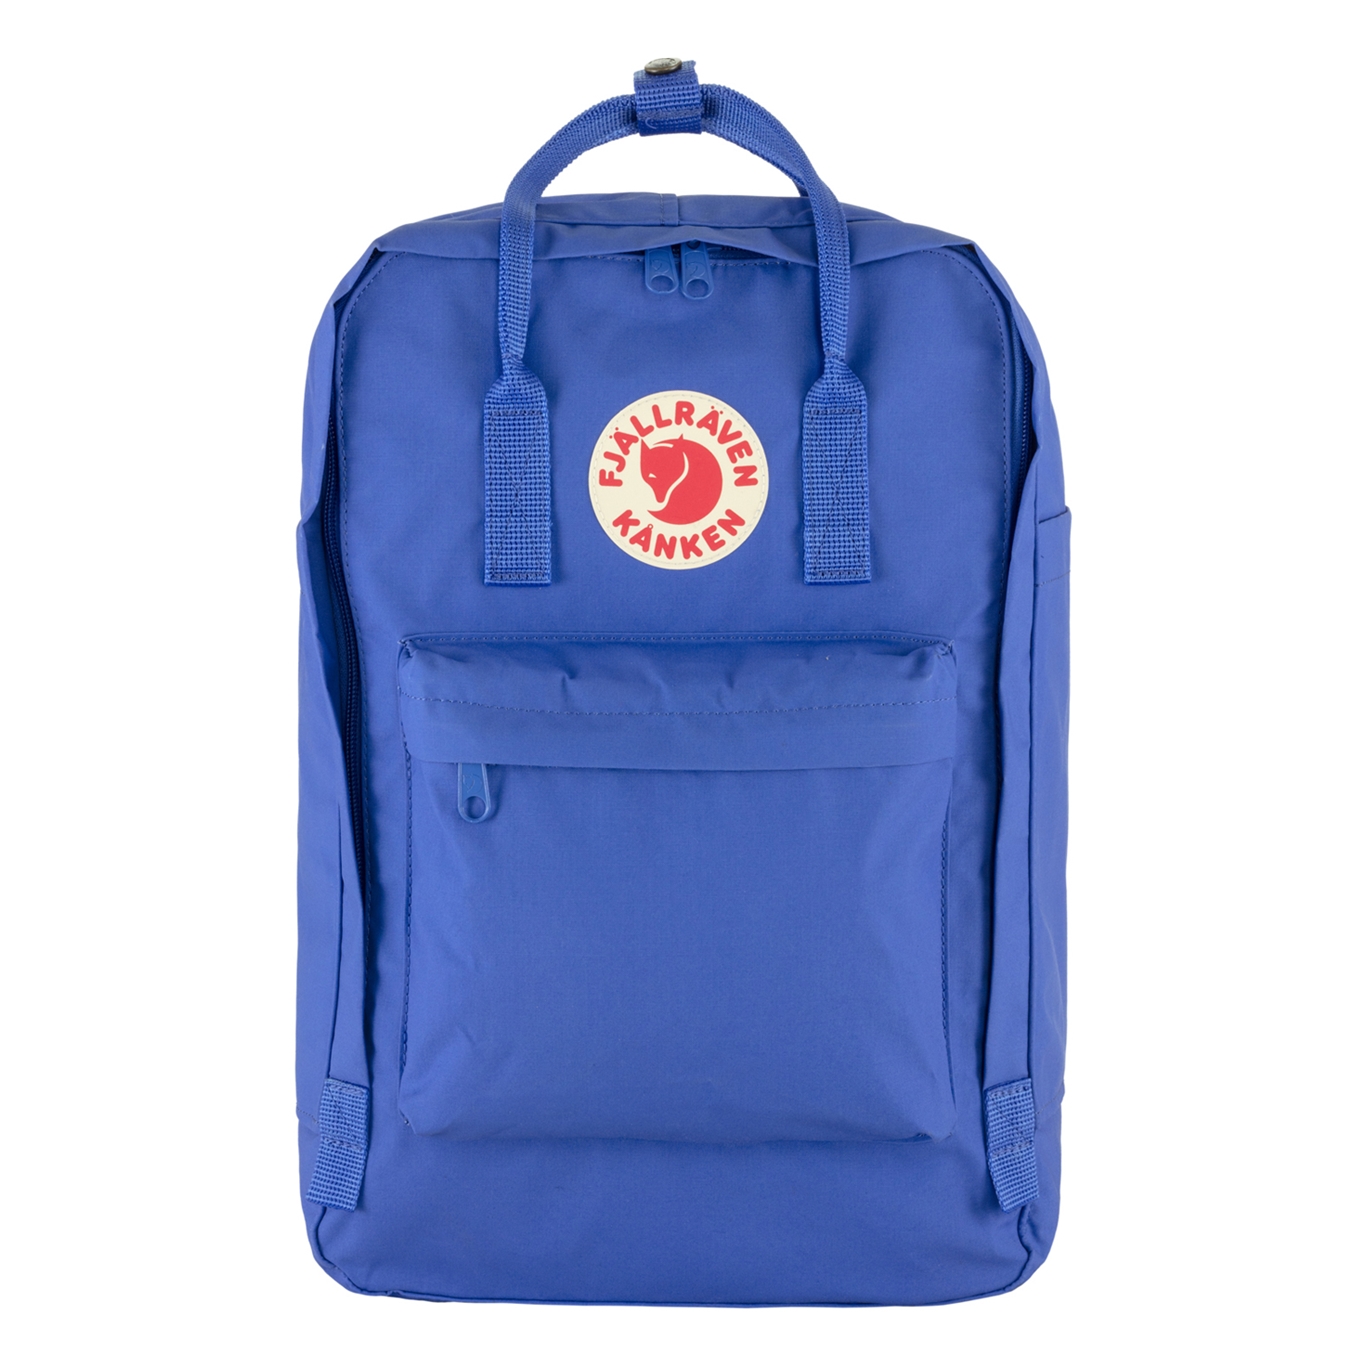 Fjallraven Kanken Laptop 17" cobalt blue backpack